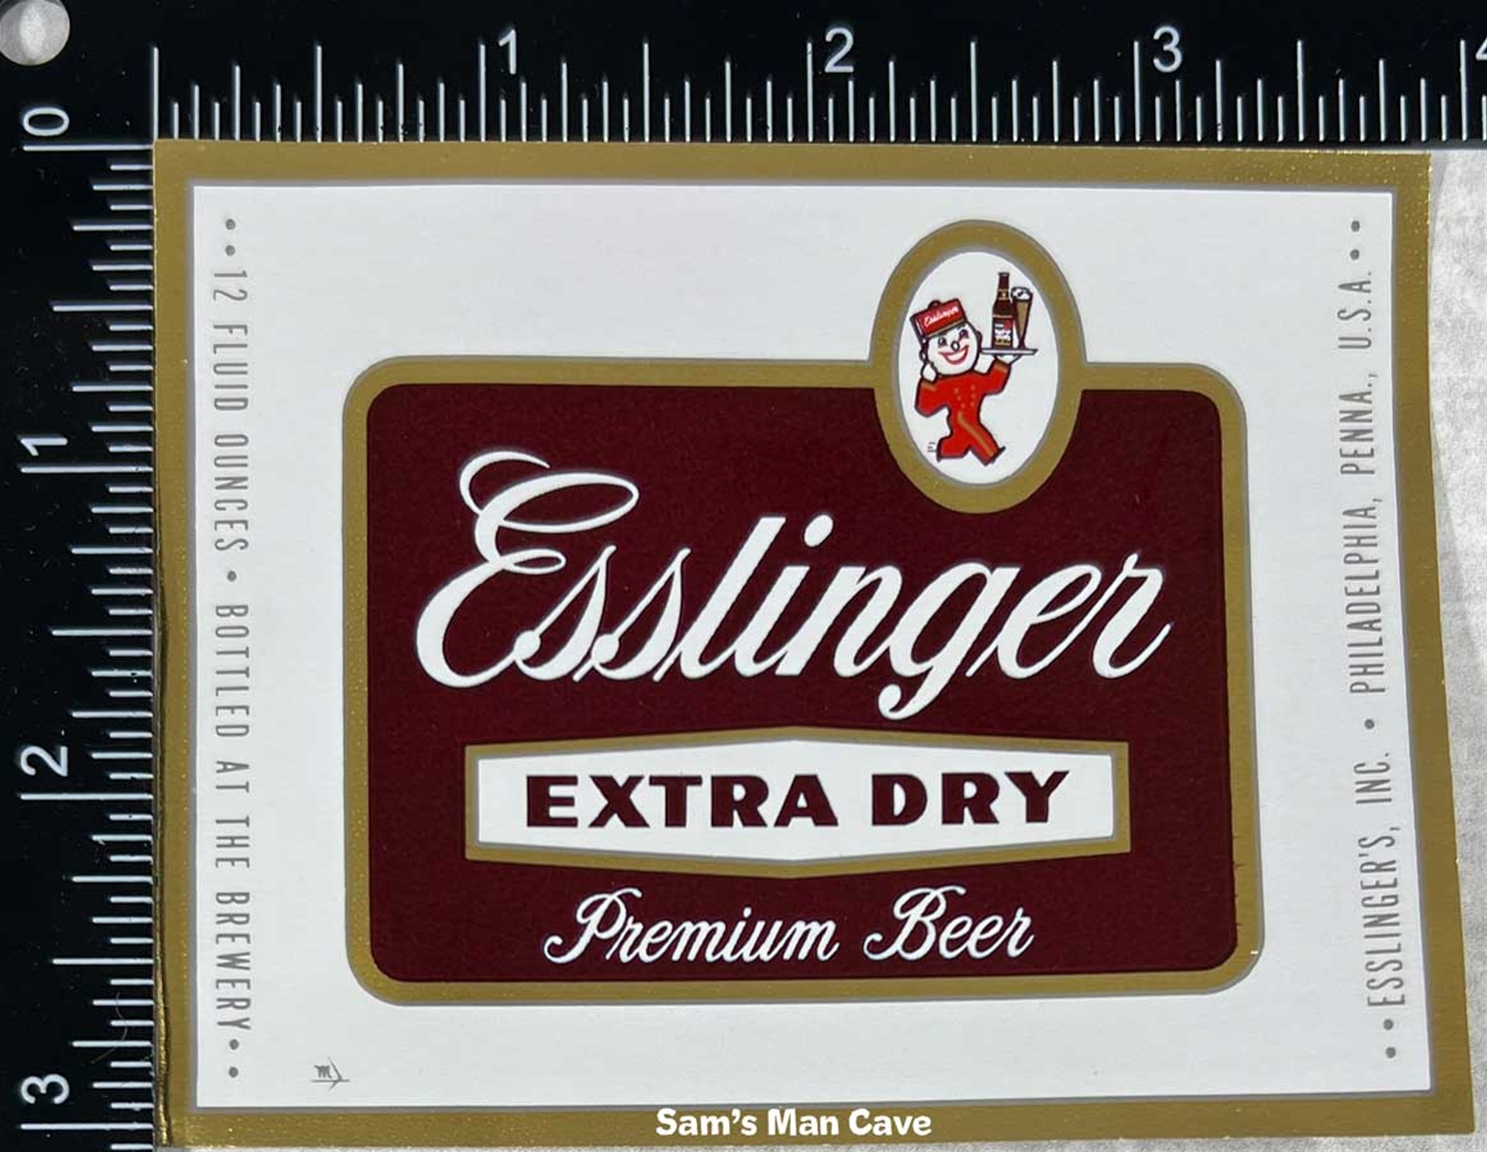 Esslinger Extra Dry Premium Beer Label